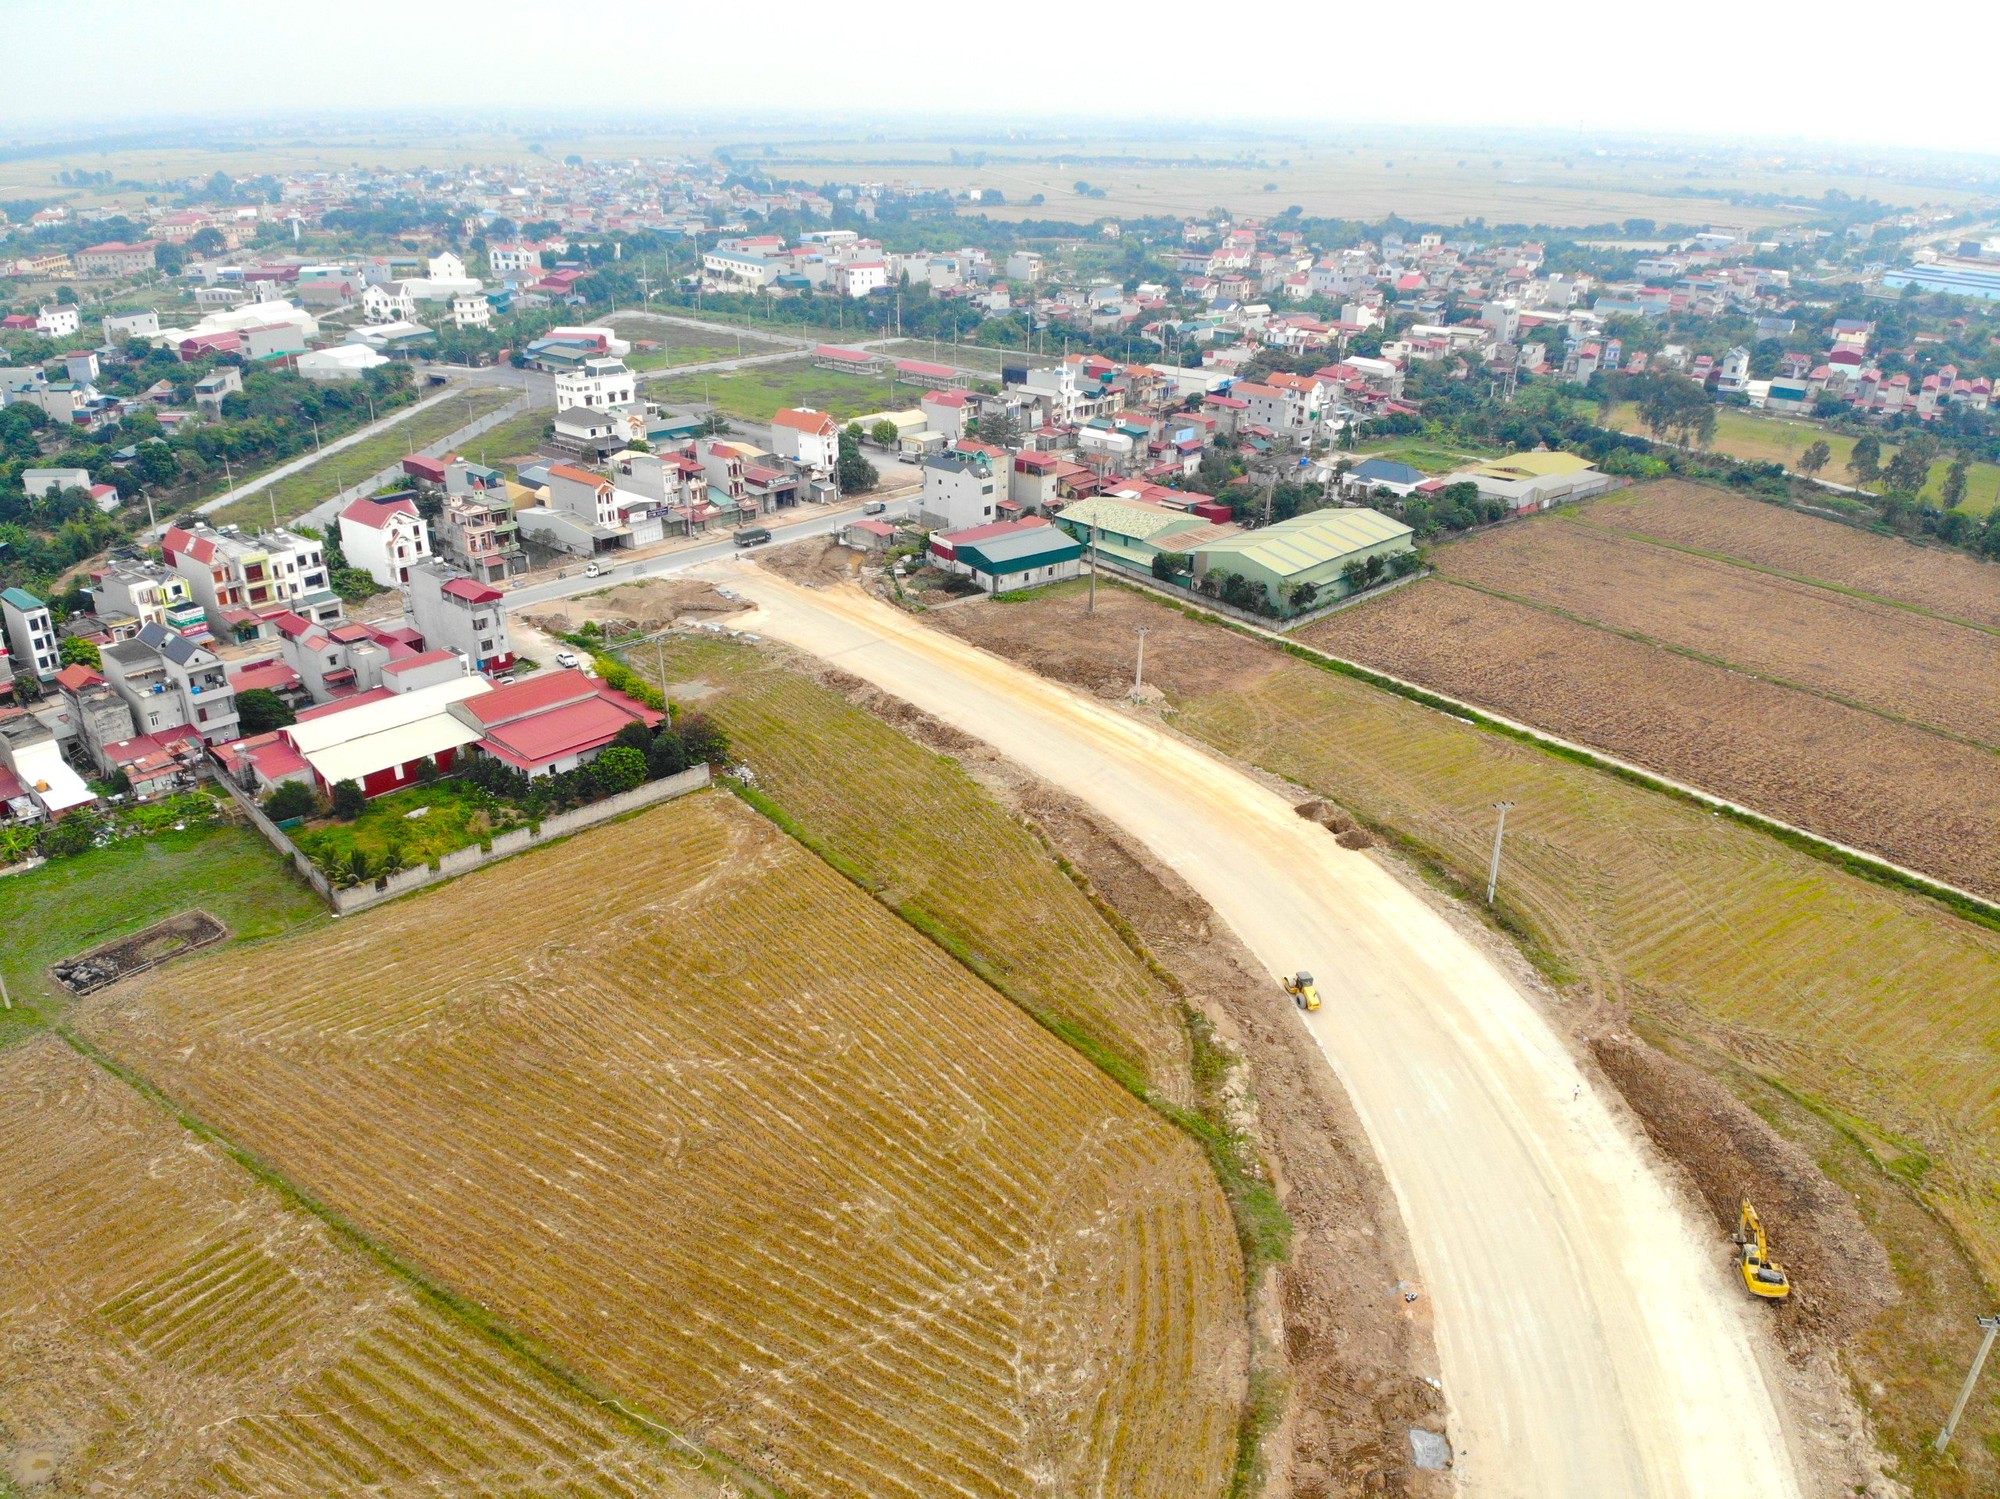  Toàn cảnh nút giao đường cao tốc Hà Nội - Hải Phòng với đường tỉnh 392 - Ảnh 10.